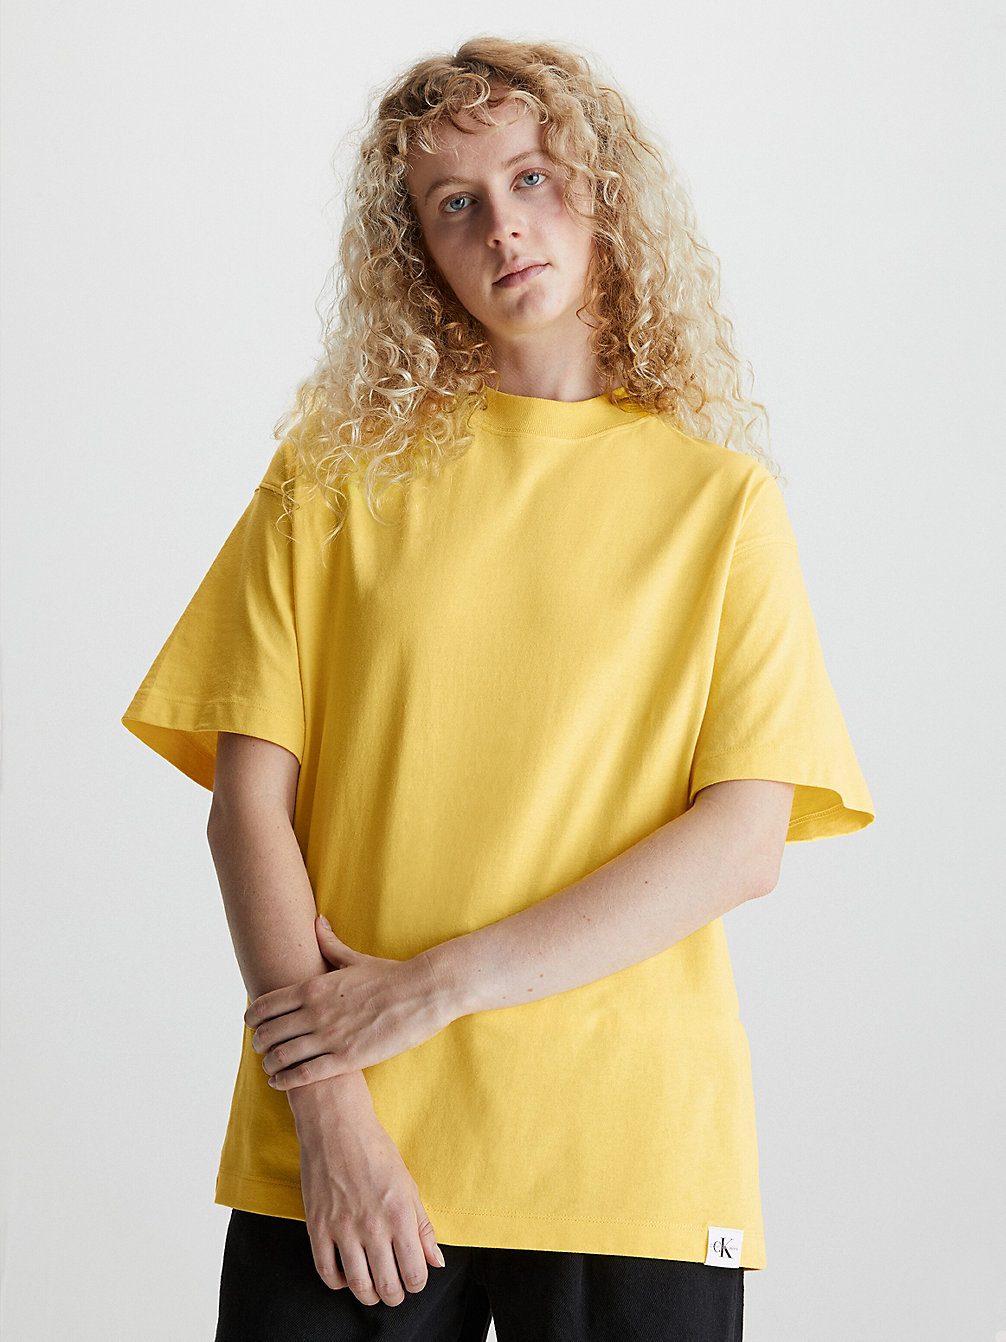 SUNLIT YELLOW > Габаритная футболка унисекс > undefined unisex - Calvin Klein